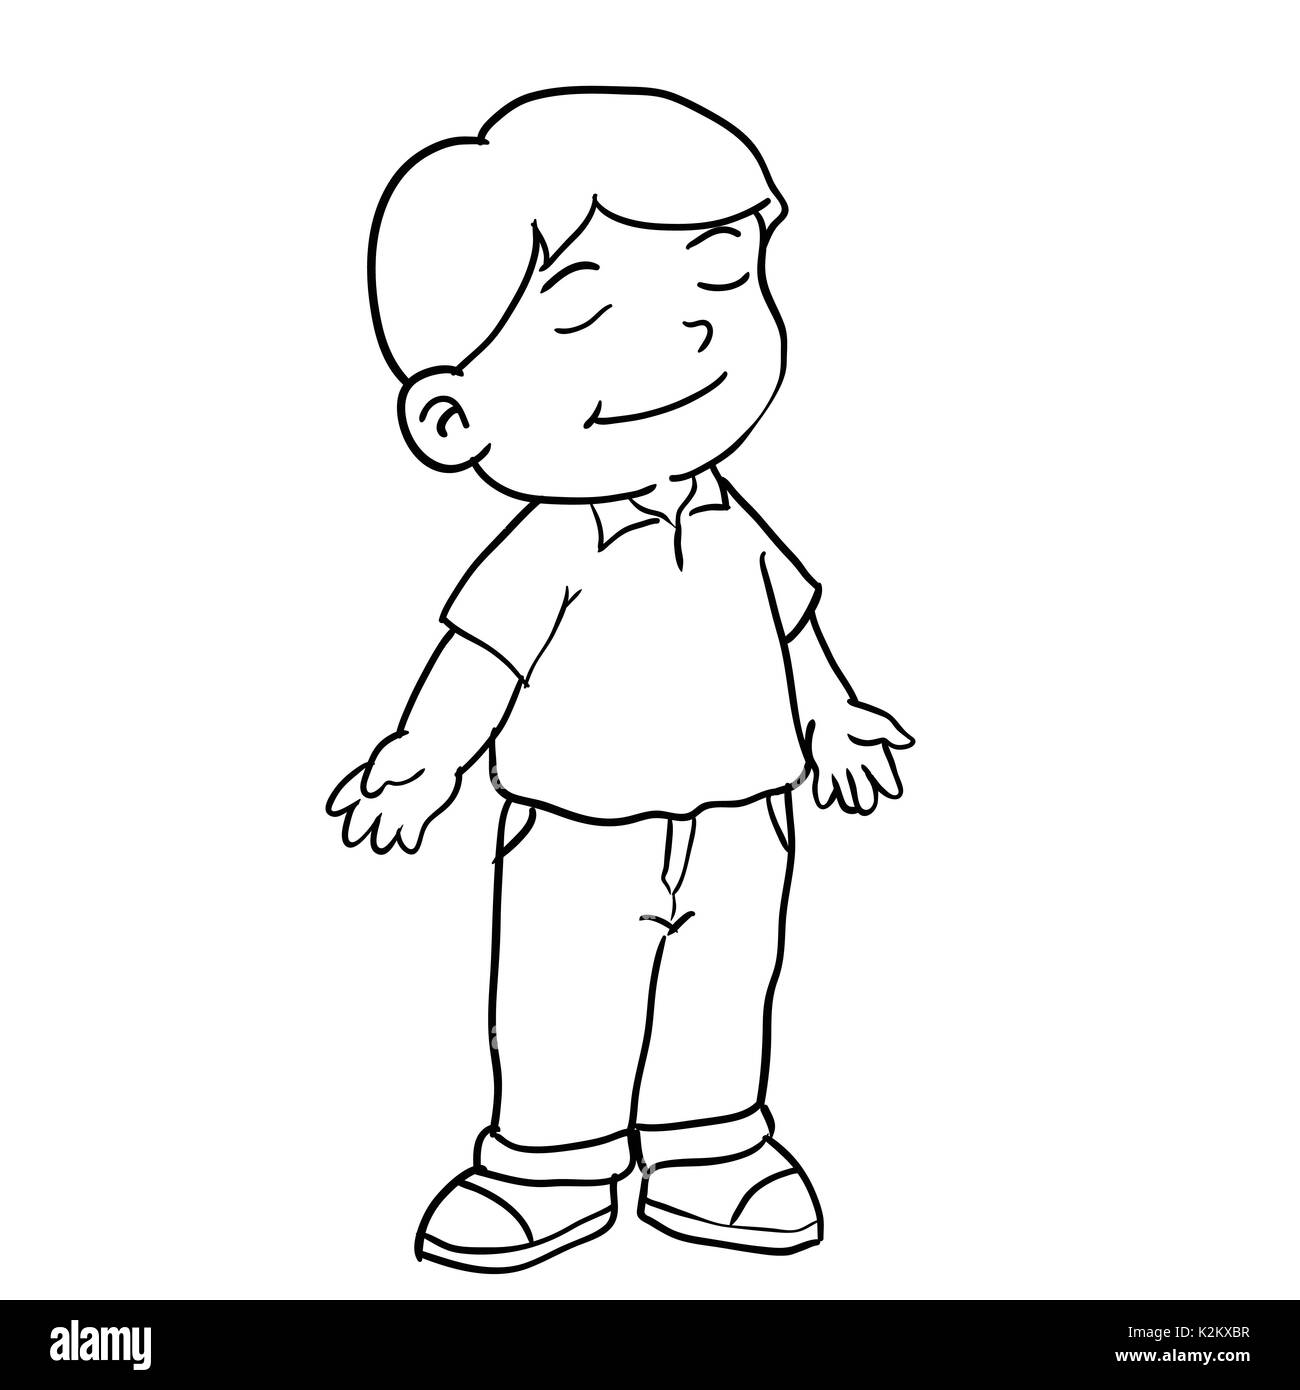 Disegno a mano del ragazzo che sta respirando isolati su sfondo bianco.  Bianco e nero linea semplice illustrazione vettoriale per libro da colorare  - LINEA TRACCIATA V Immagine e Vettoriale - Alamy